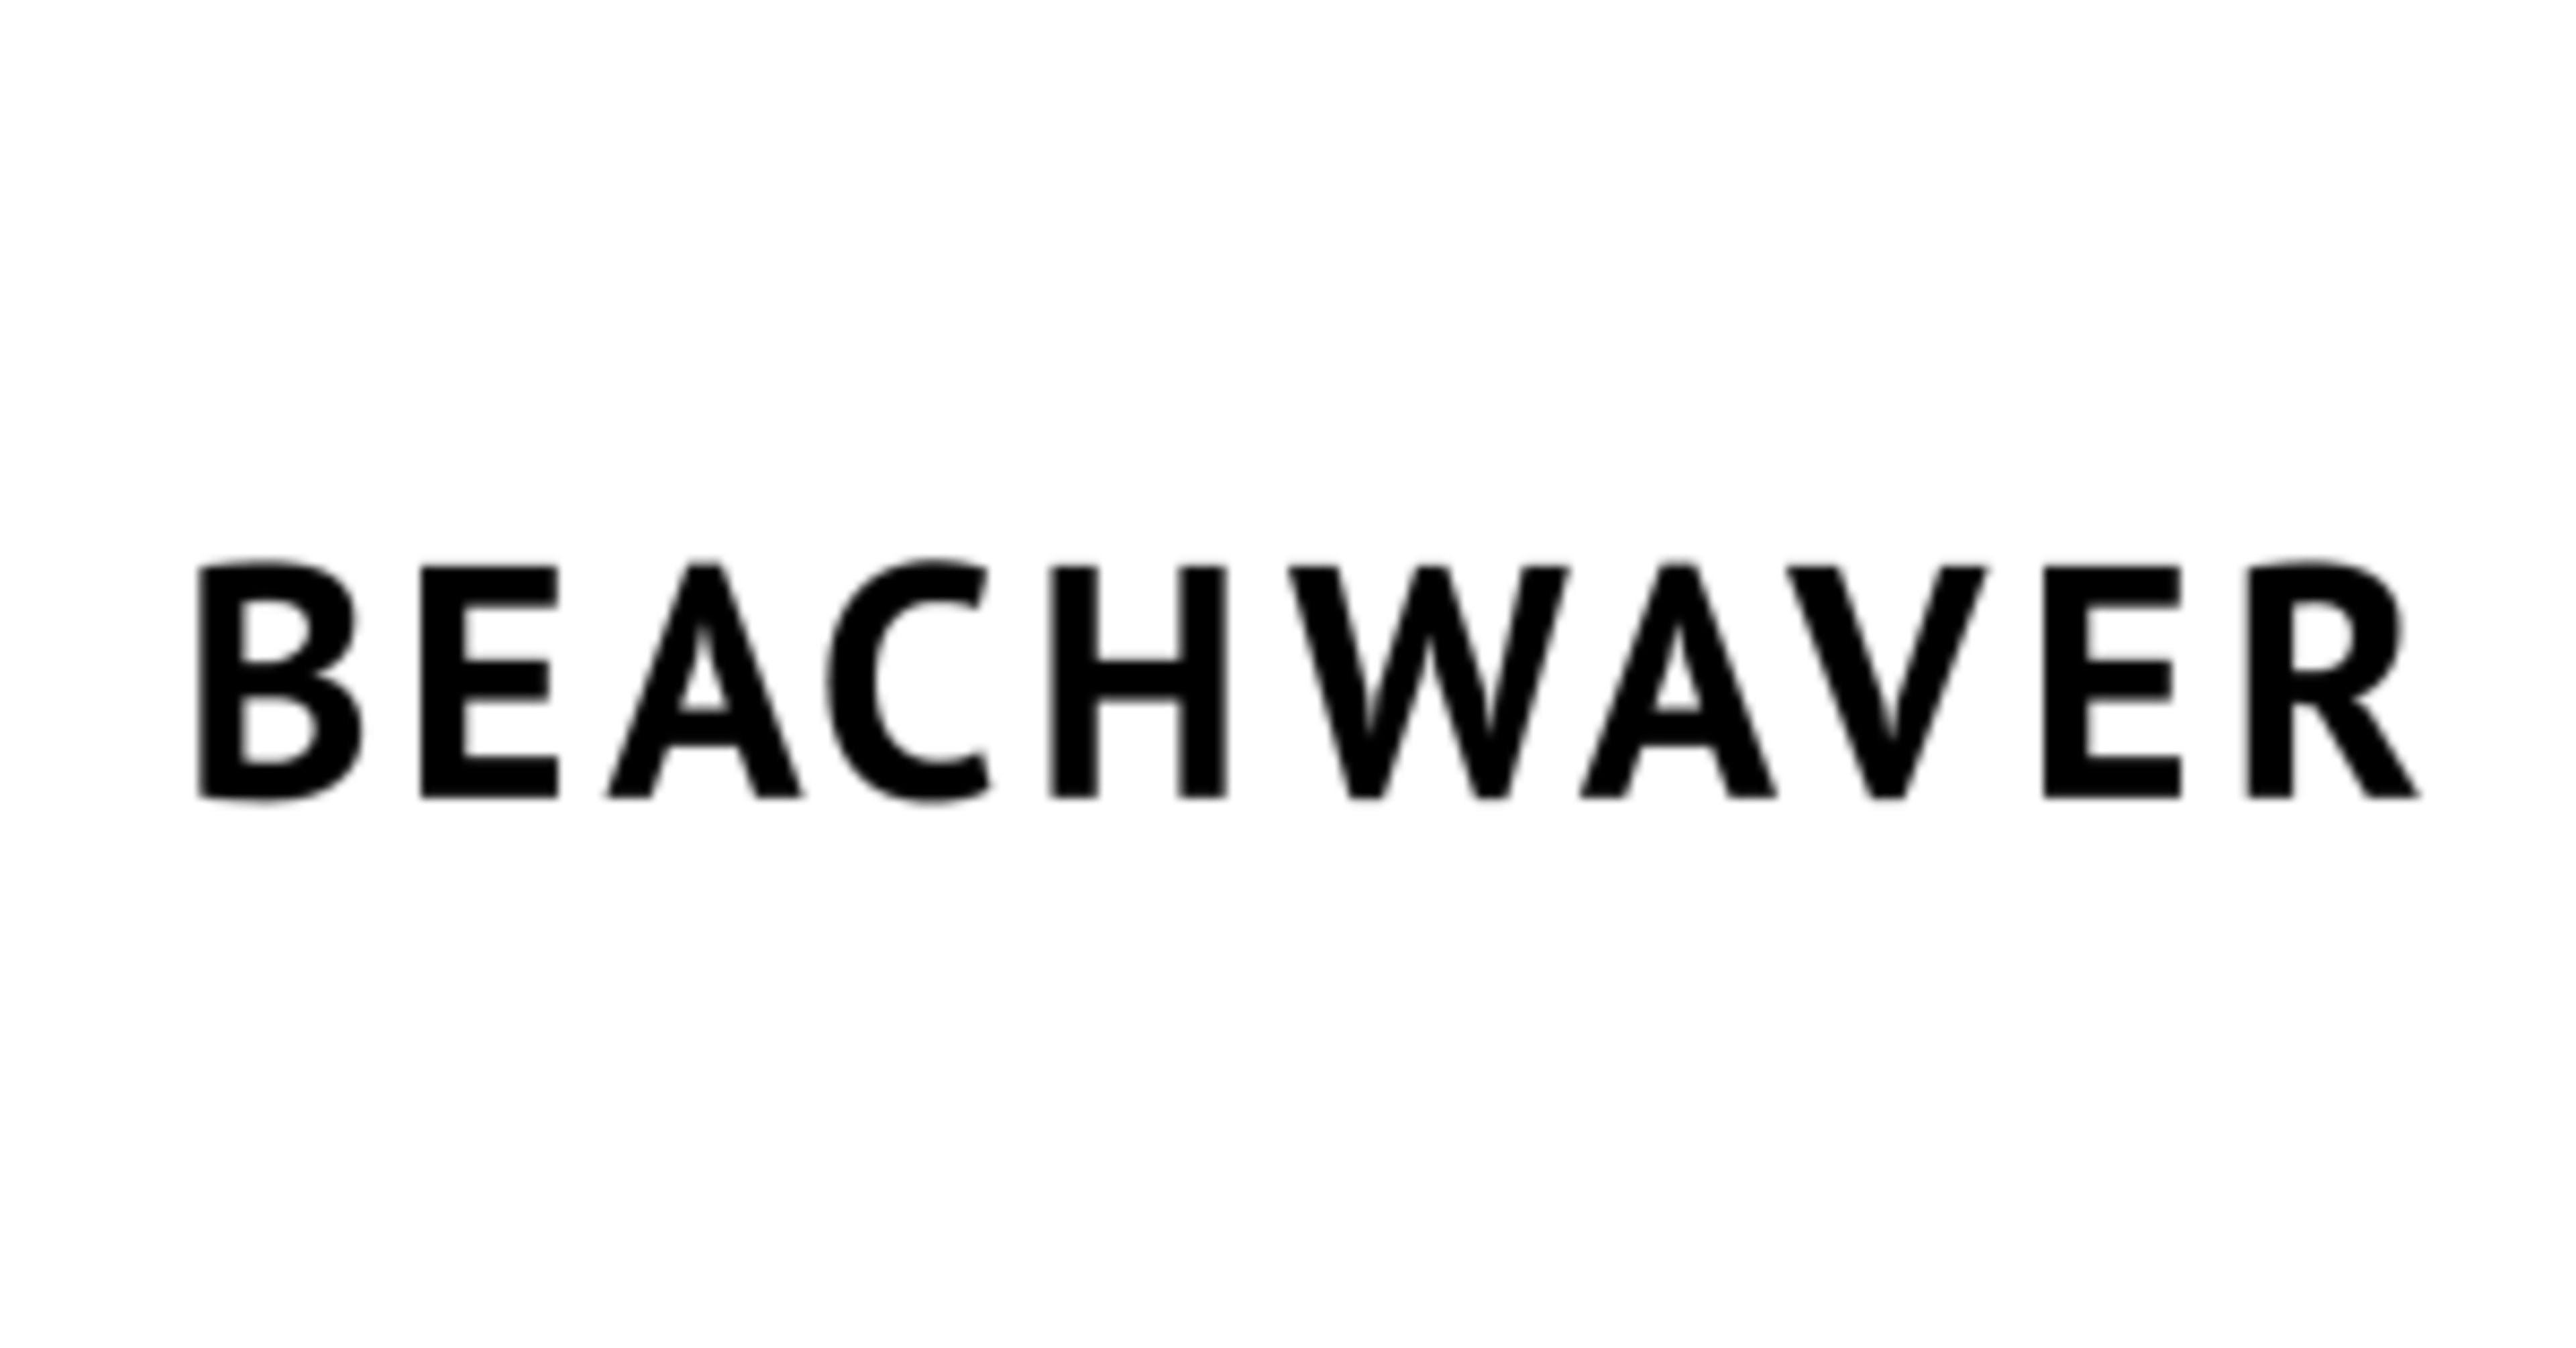 BeachwaverCode